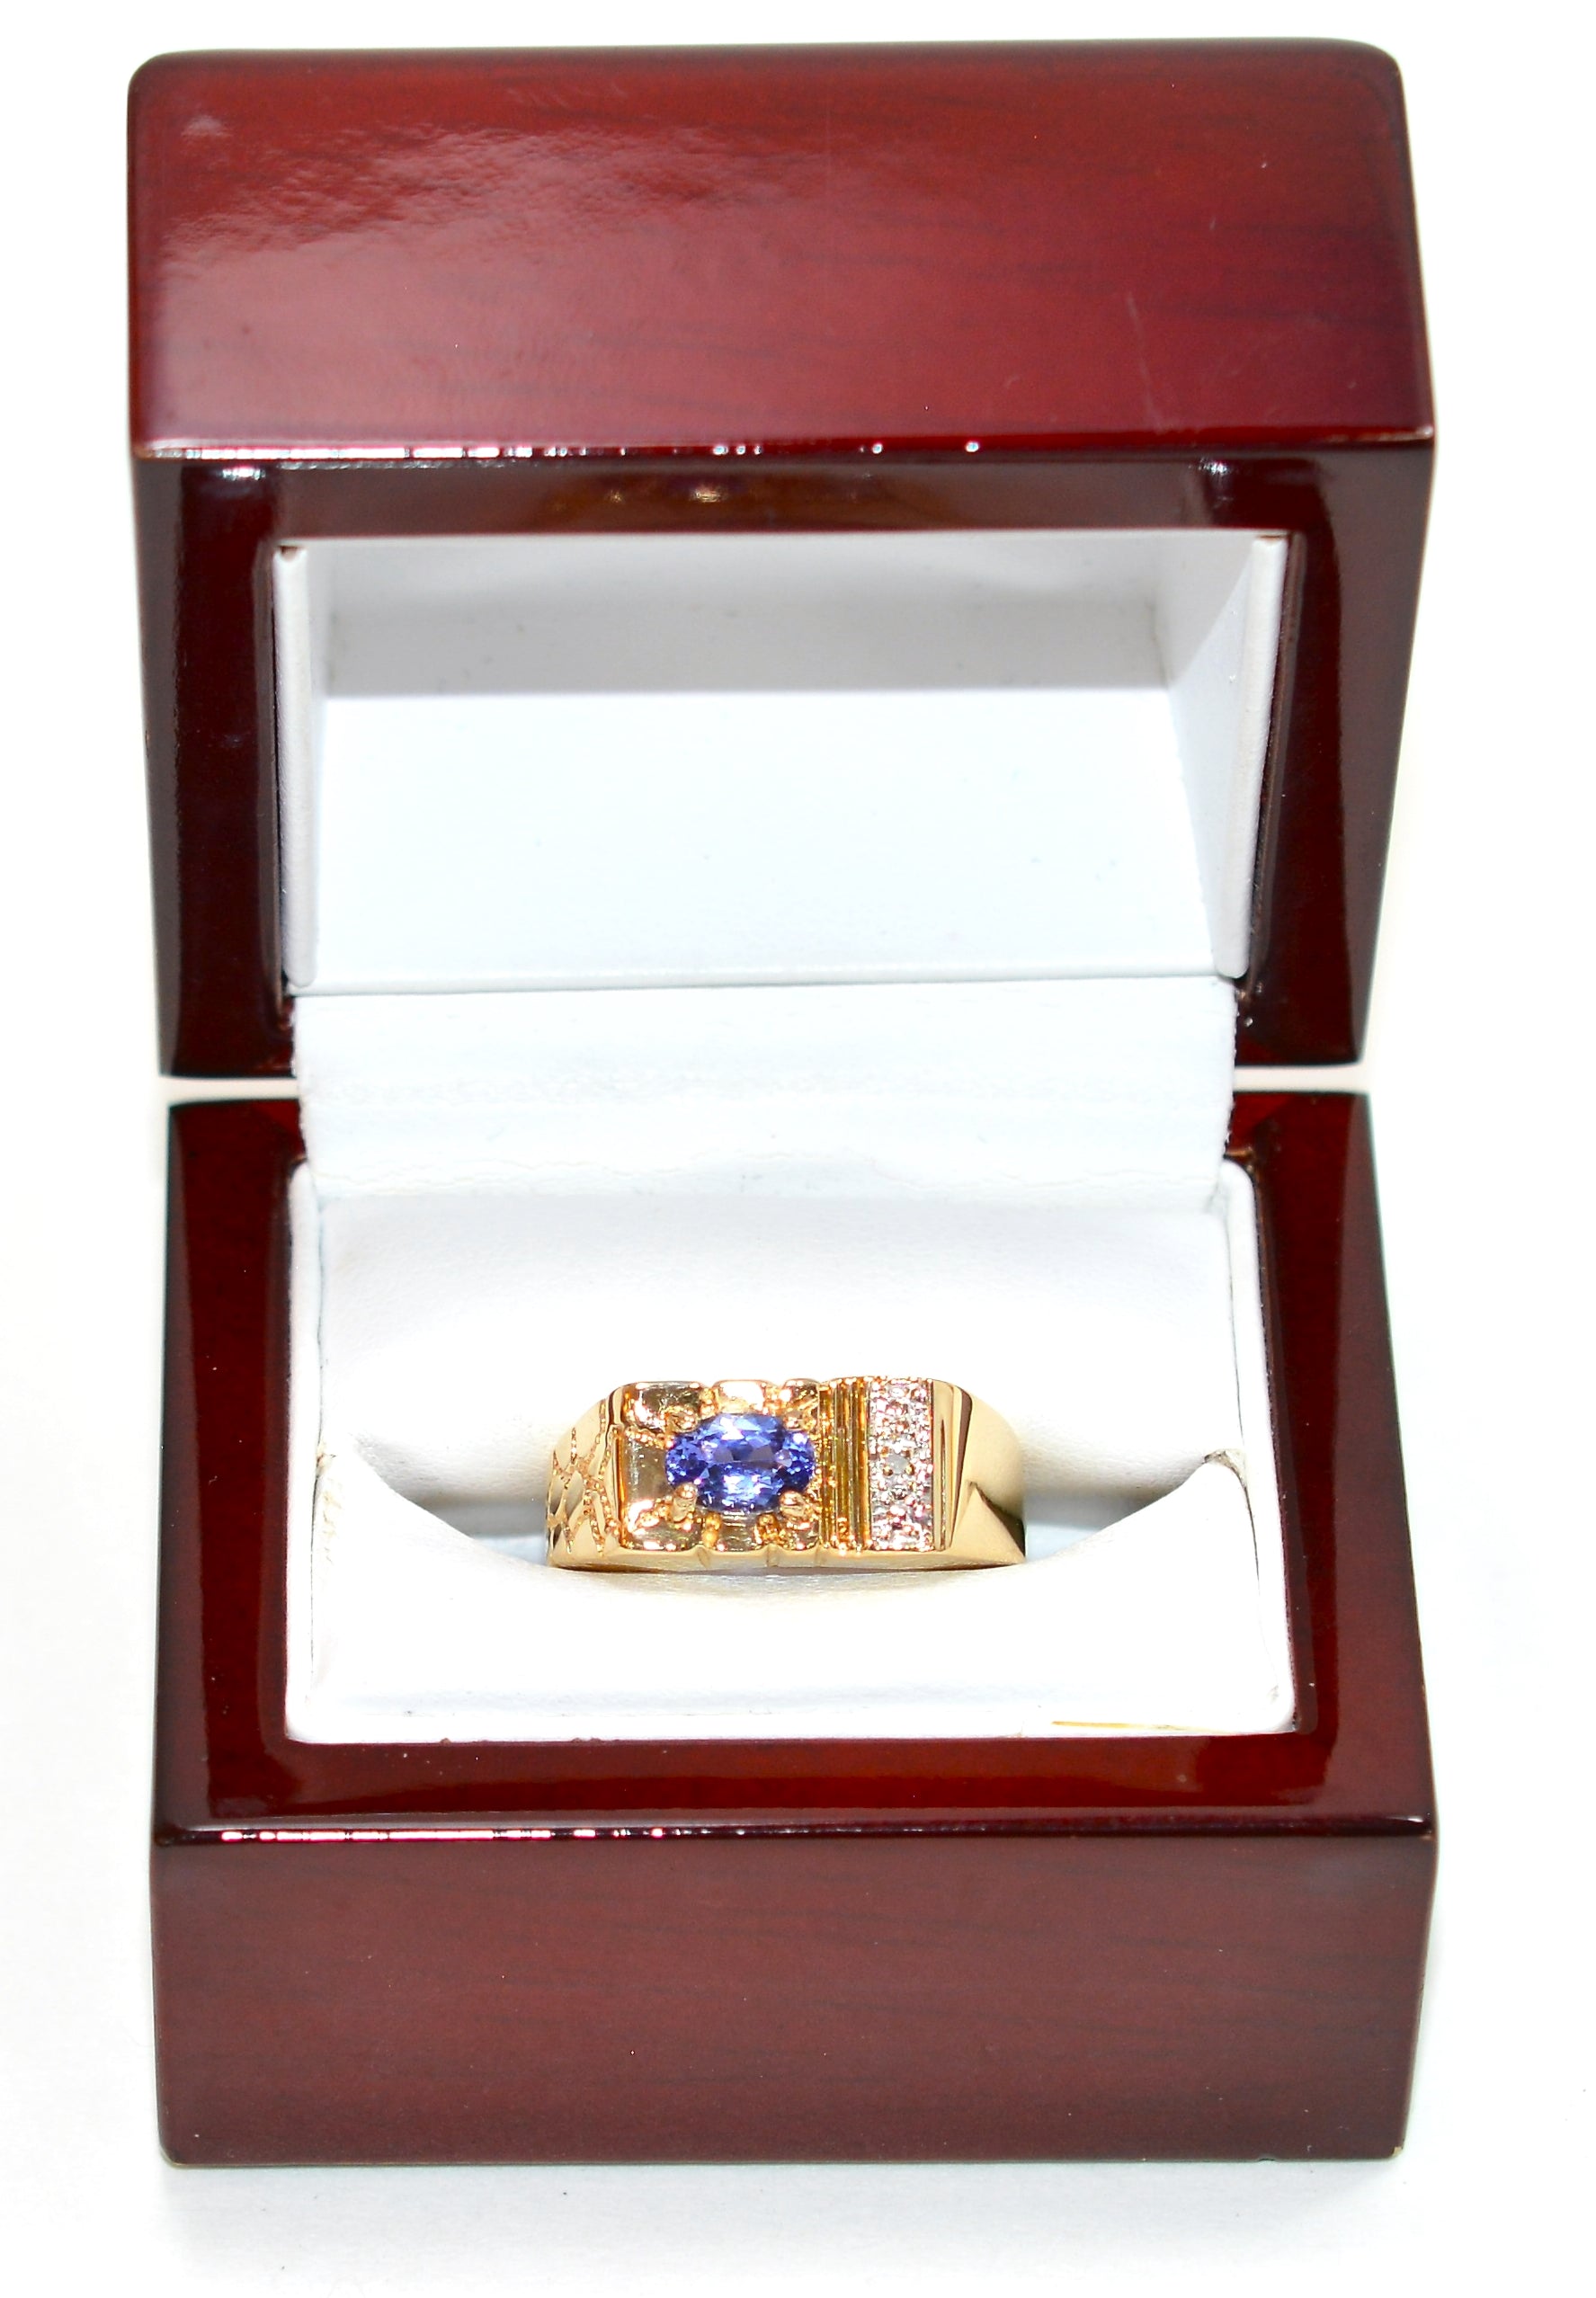 Natural D'Block Tanzanite & Diamond Ring 10K Solid Gold .71tcw Gemstone Ring Men's Ring Birthstone Ring Cocktail Ring Statement Ring Purple